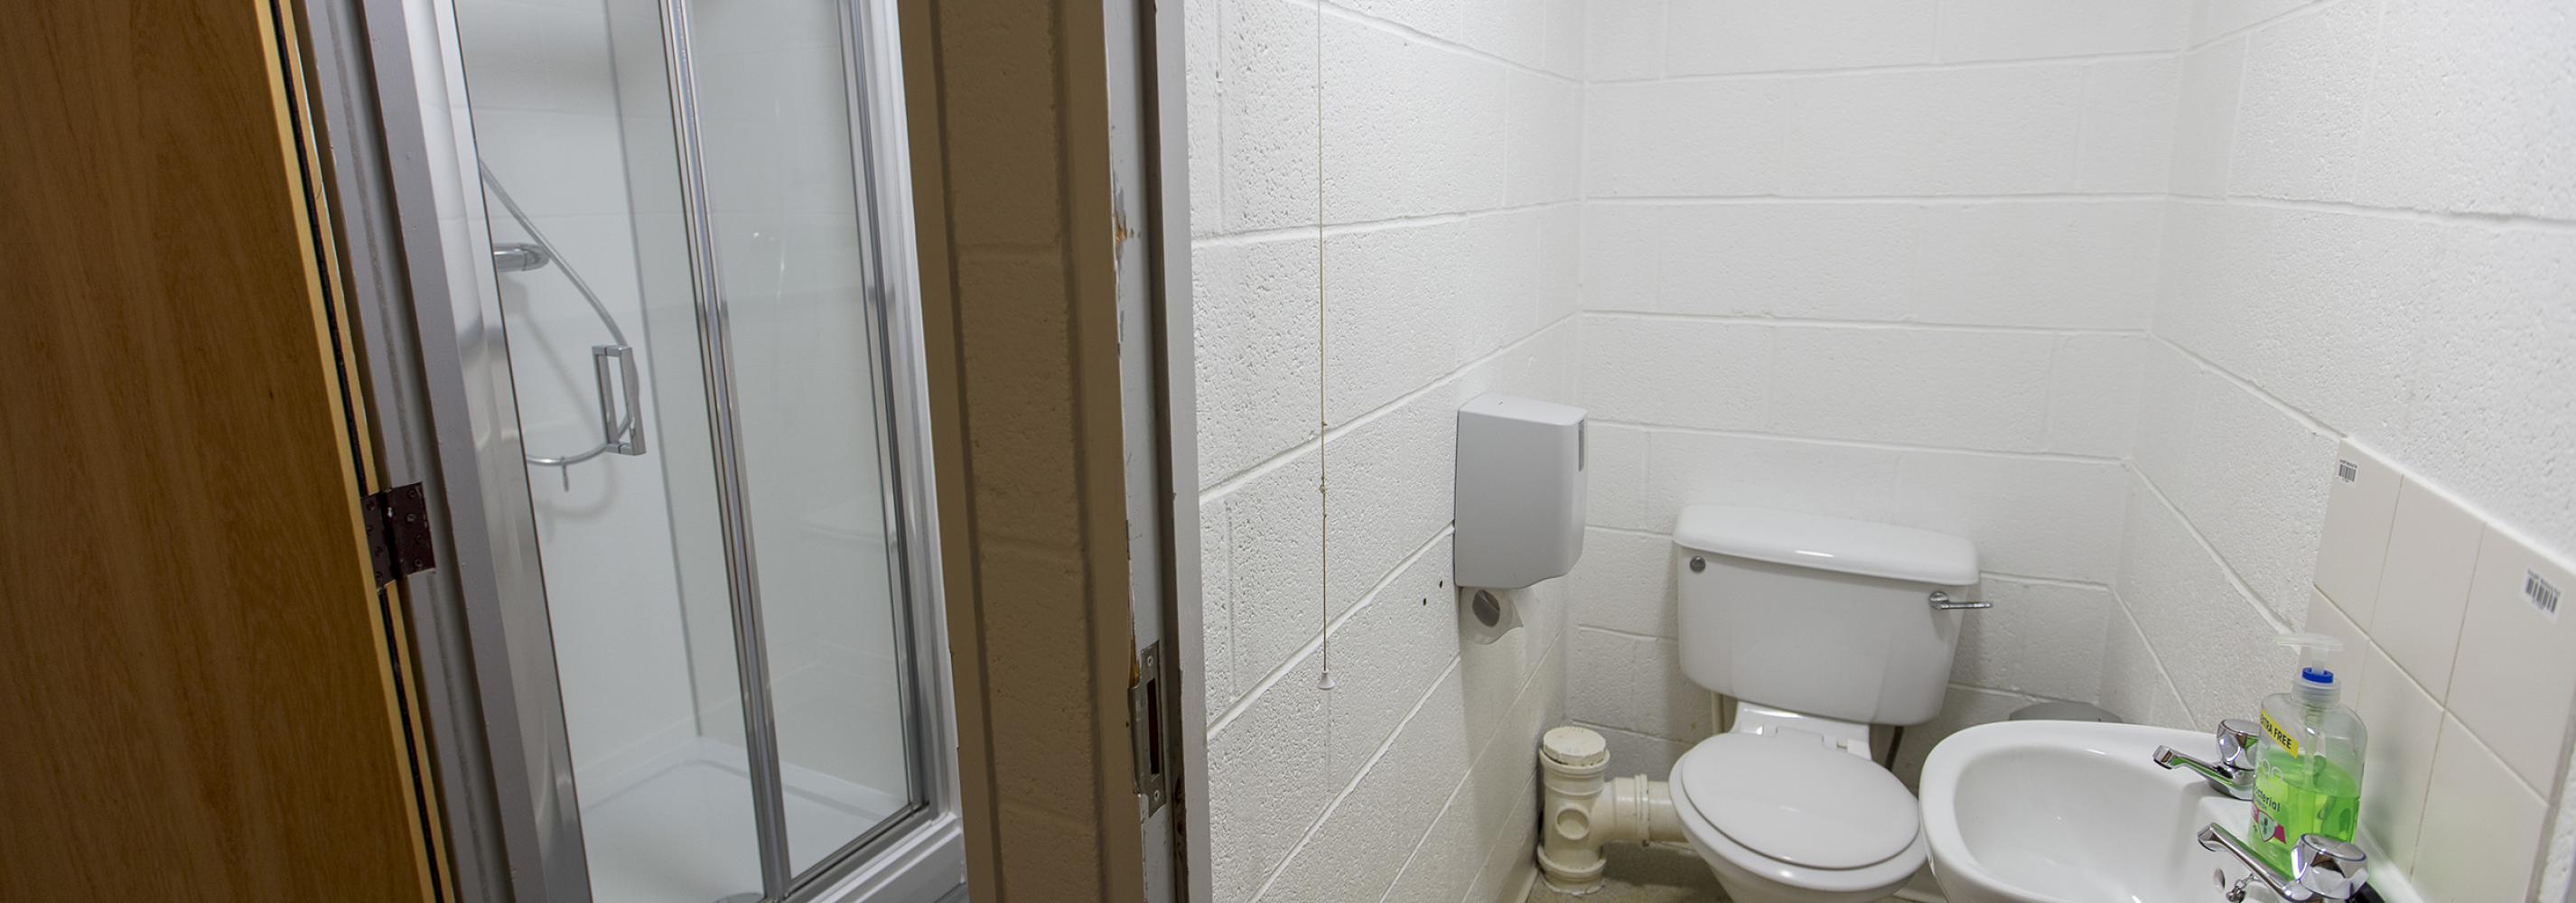 Shared bathroom facilities, toilet, dink, separate shower room, door